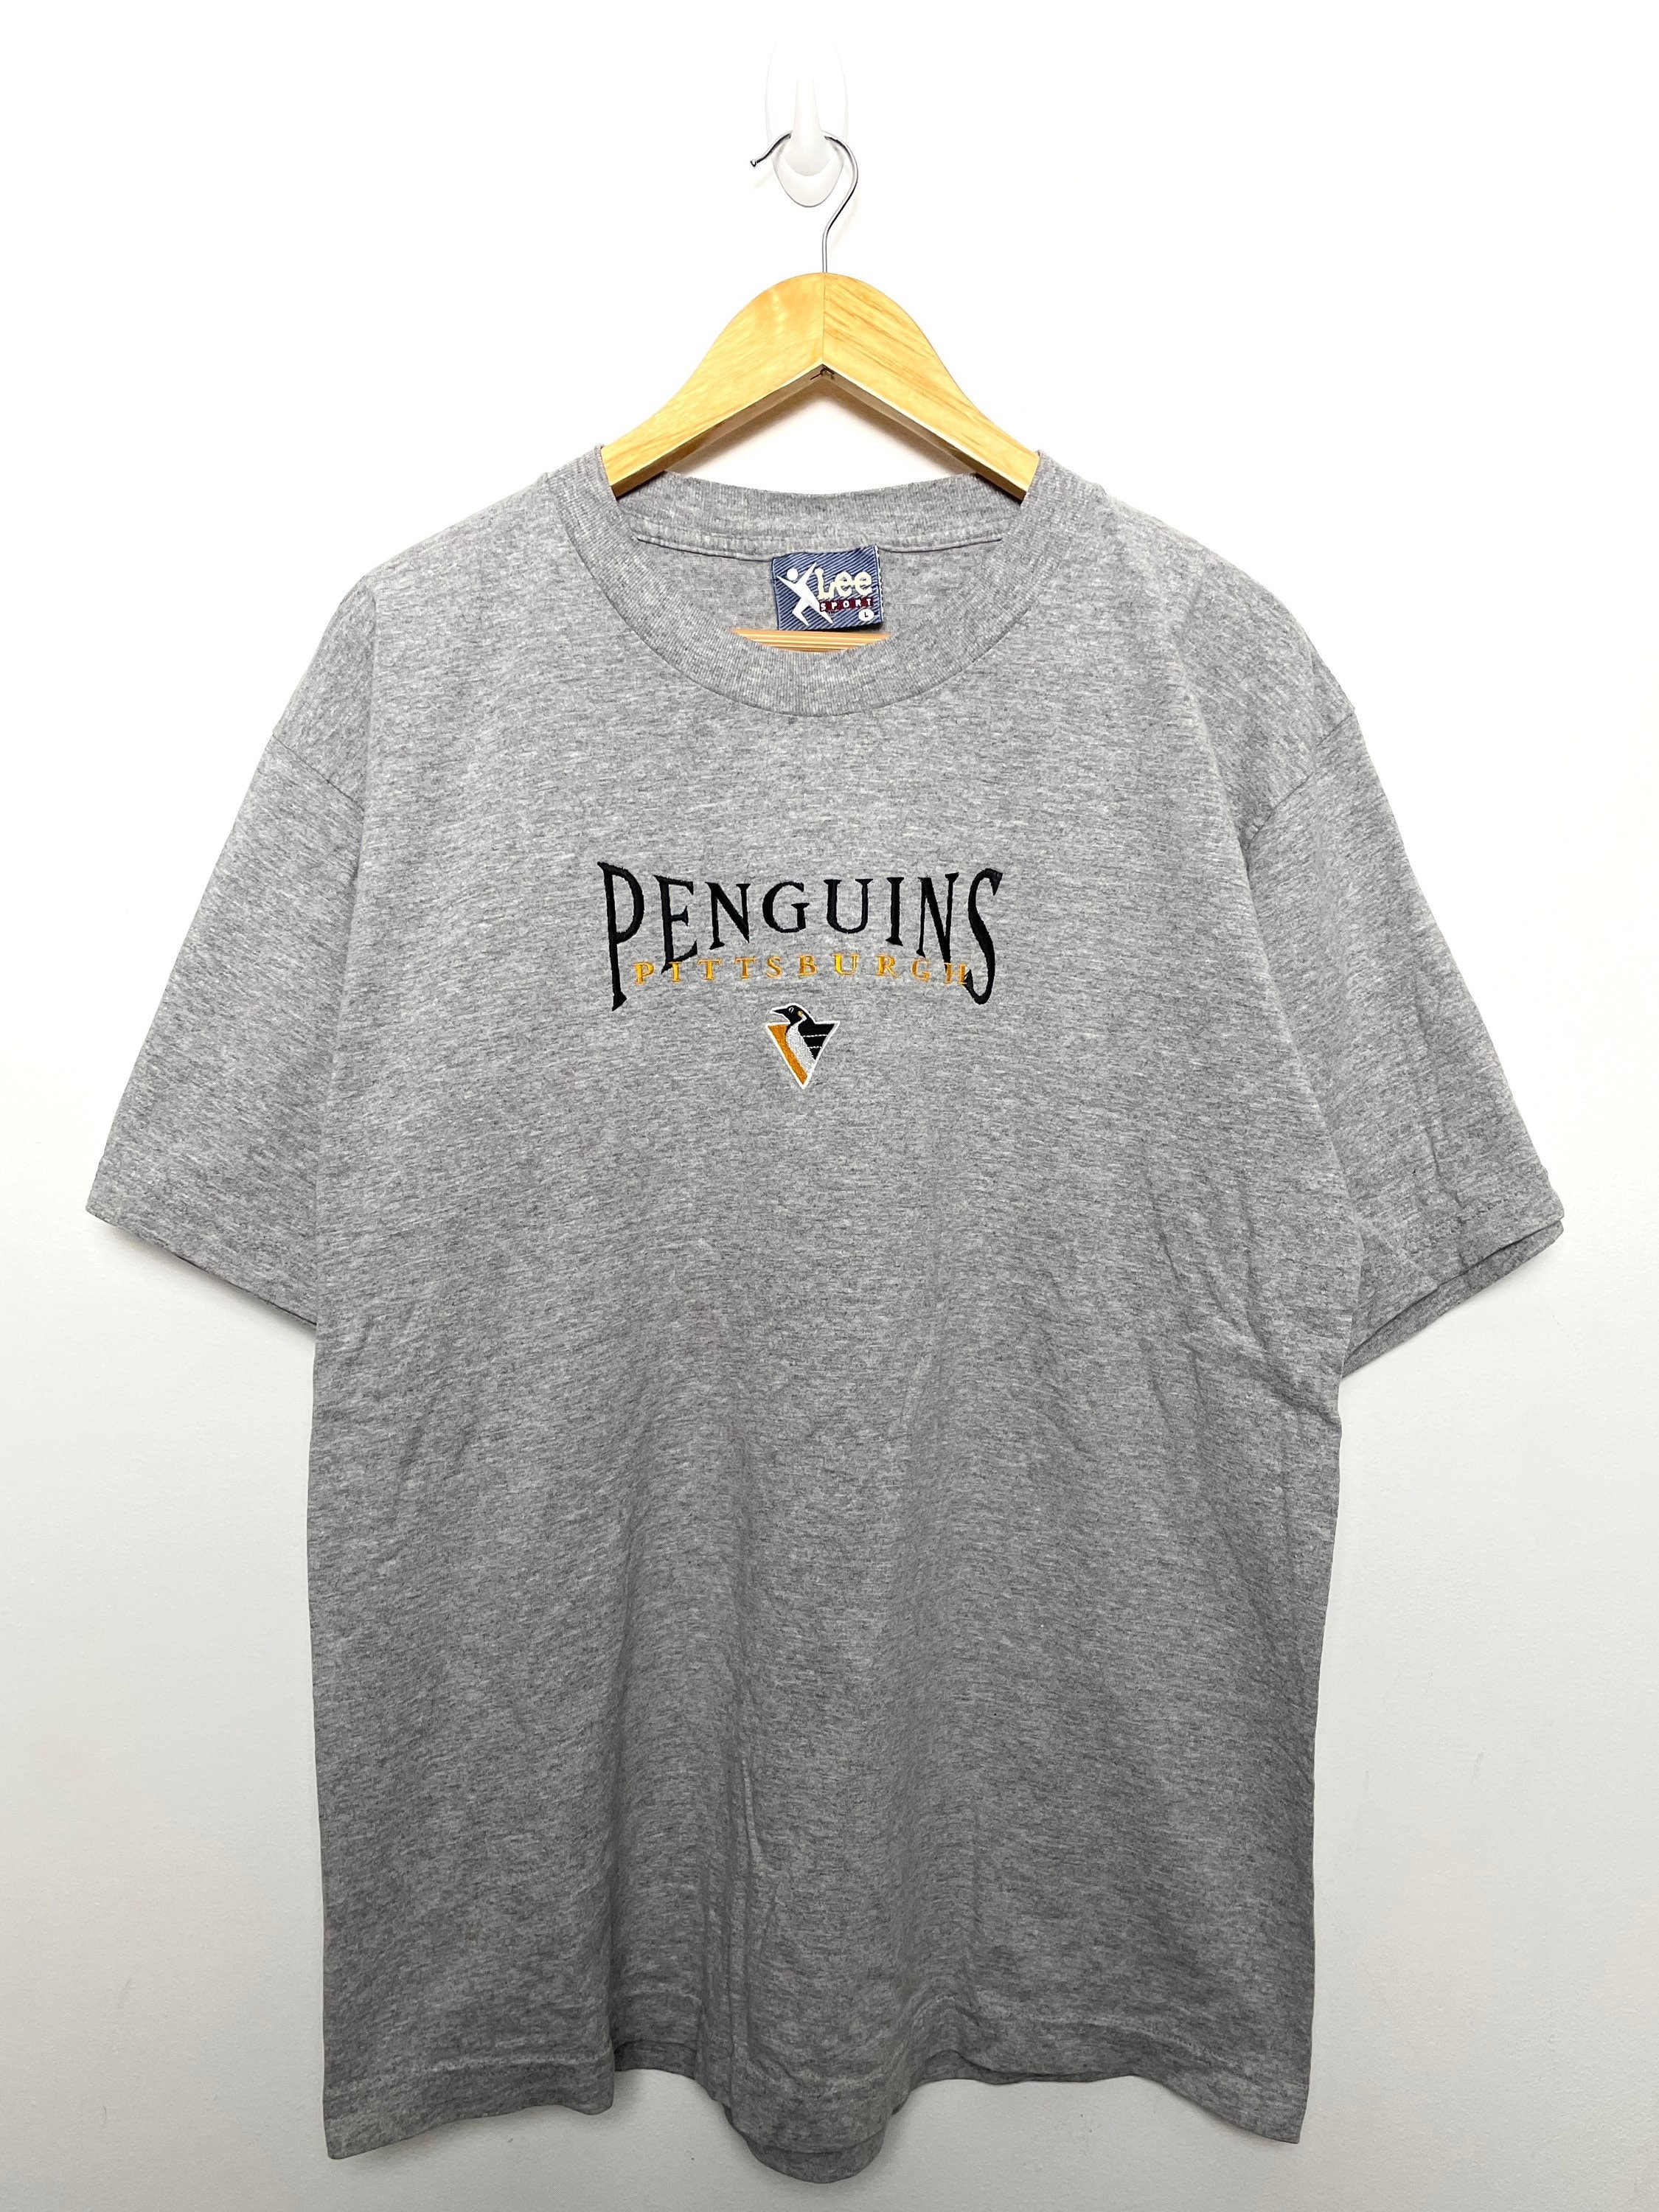 90s Jaromir Jagr NHL Hockey Pittsburgh Penguins t-shirt Large - The  Captains Vintage